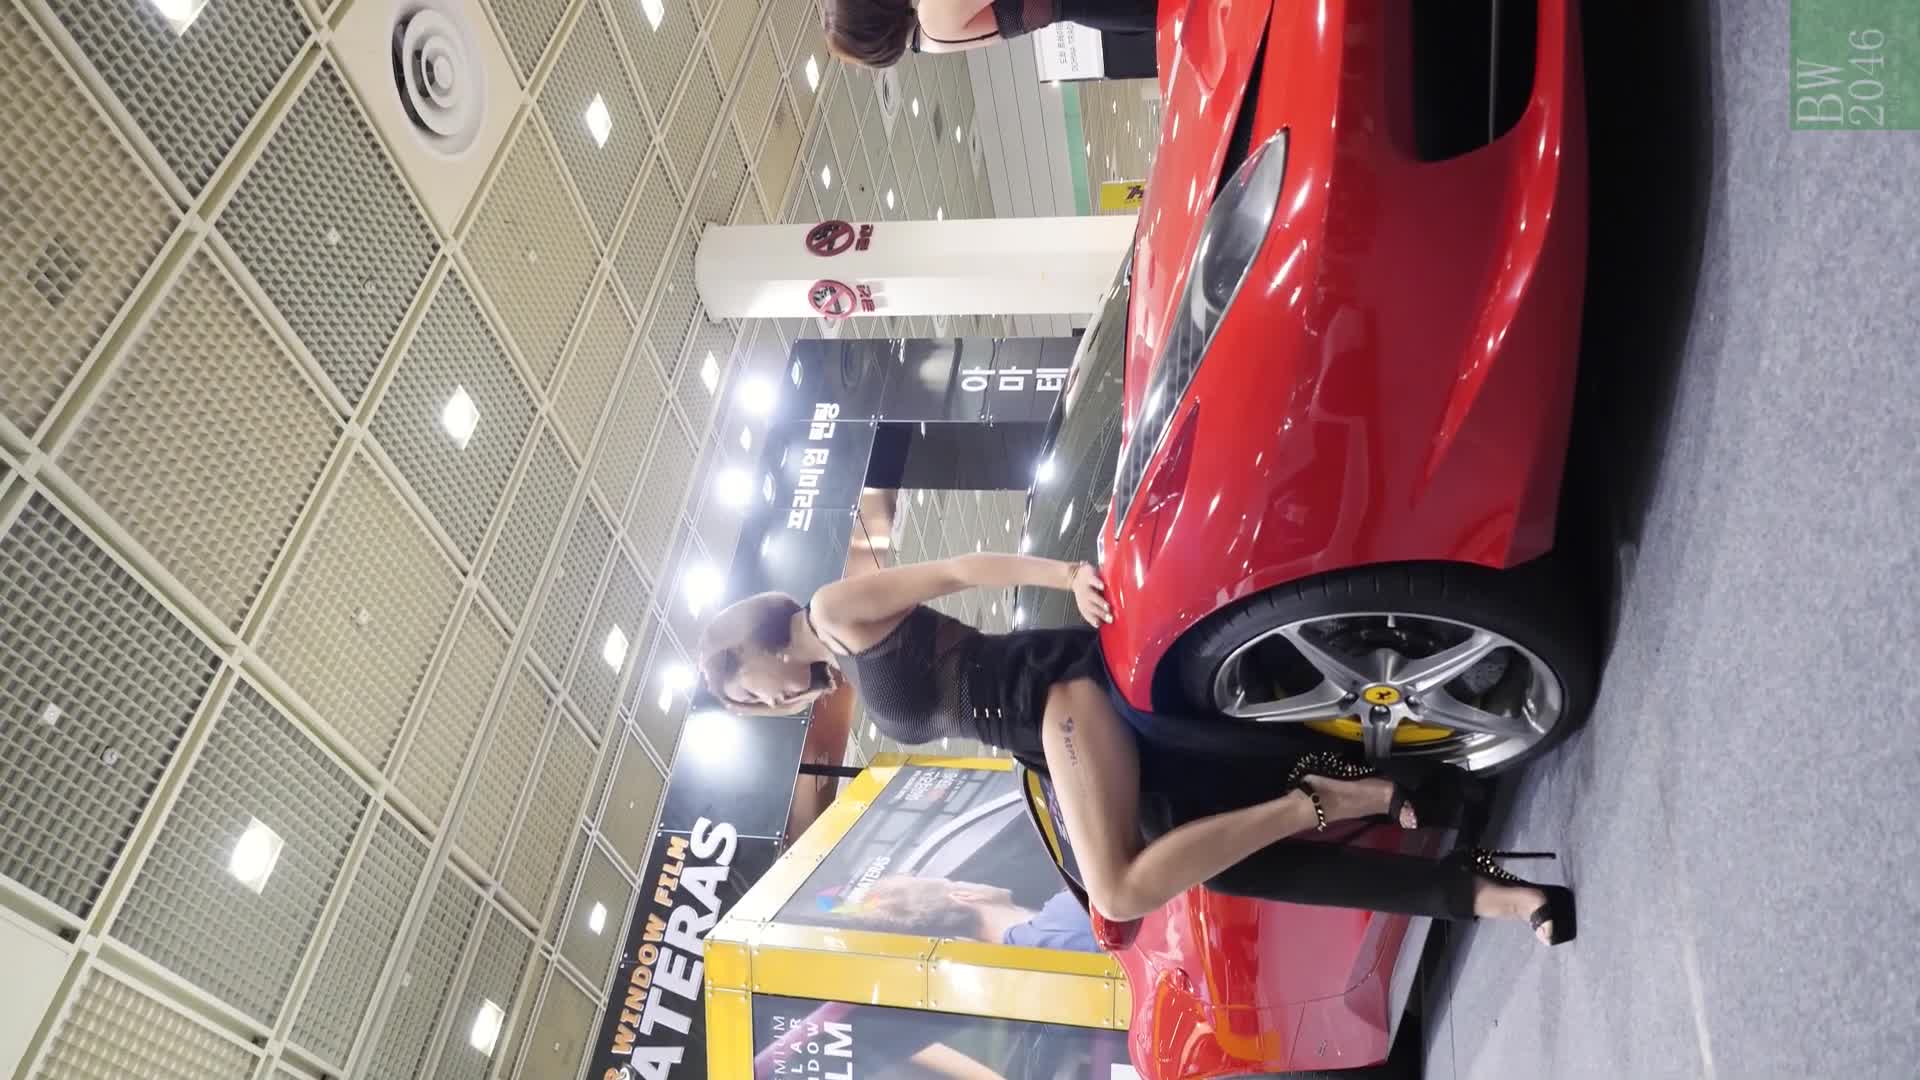 서울오토살롱 2017  SEOUL AUTO SALON 2017 –  김하율 Kim Hayul, Racing Model 레이싱모델 車模 14 (Horizontal Ver.)